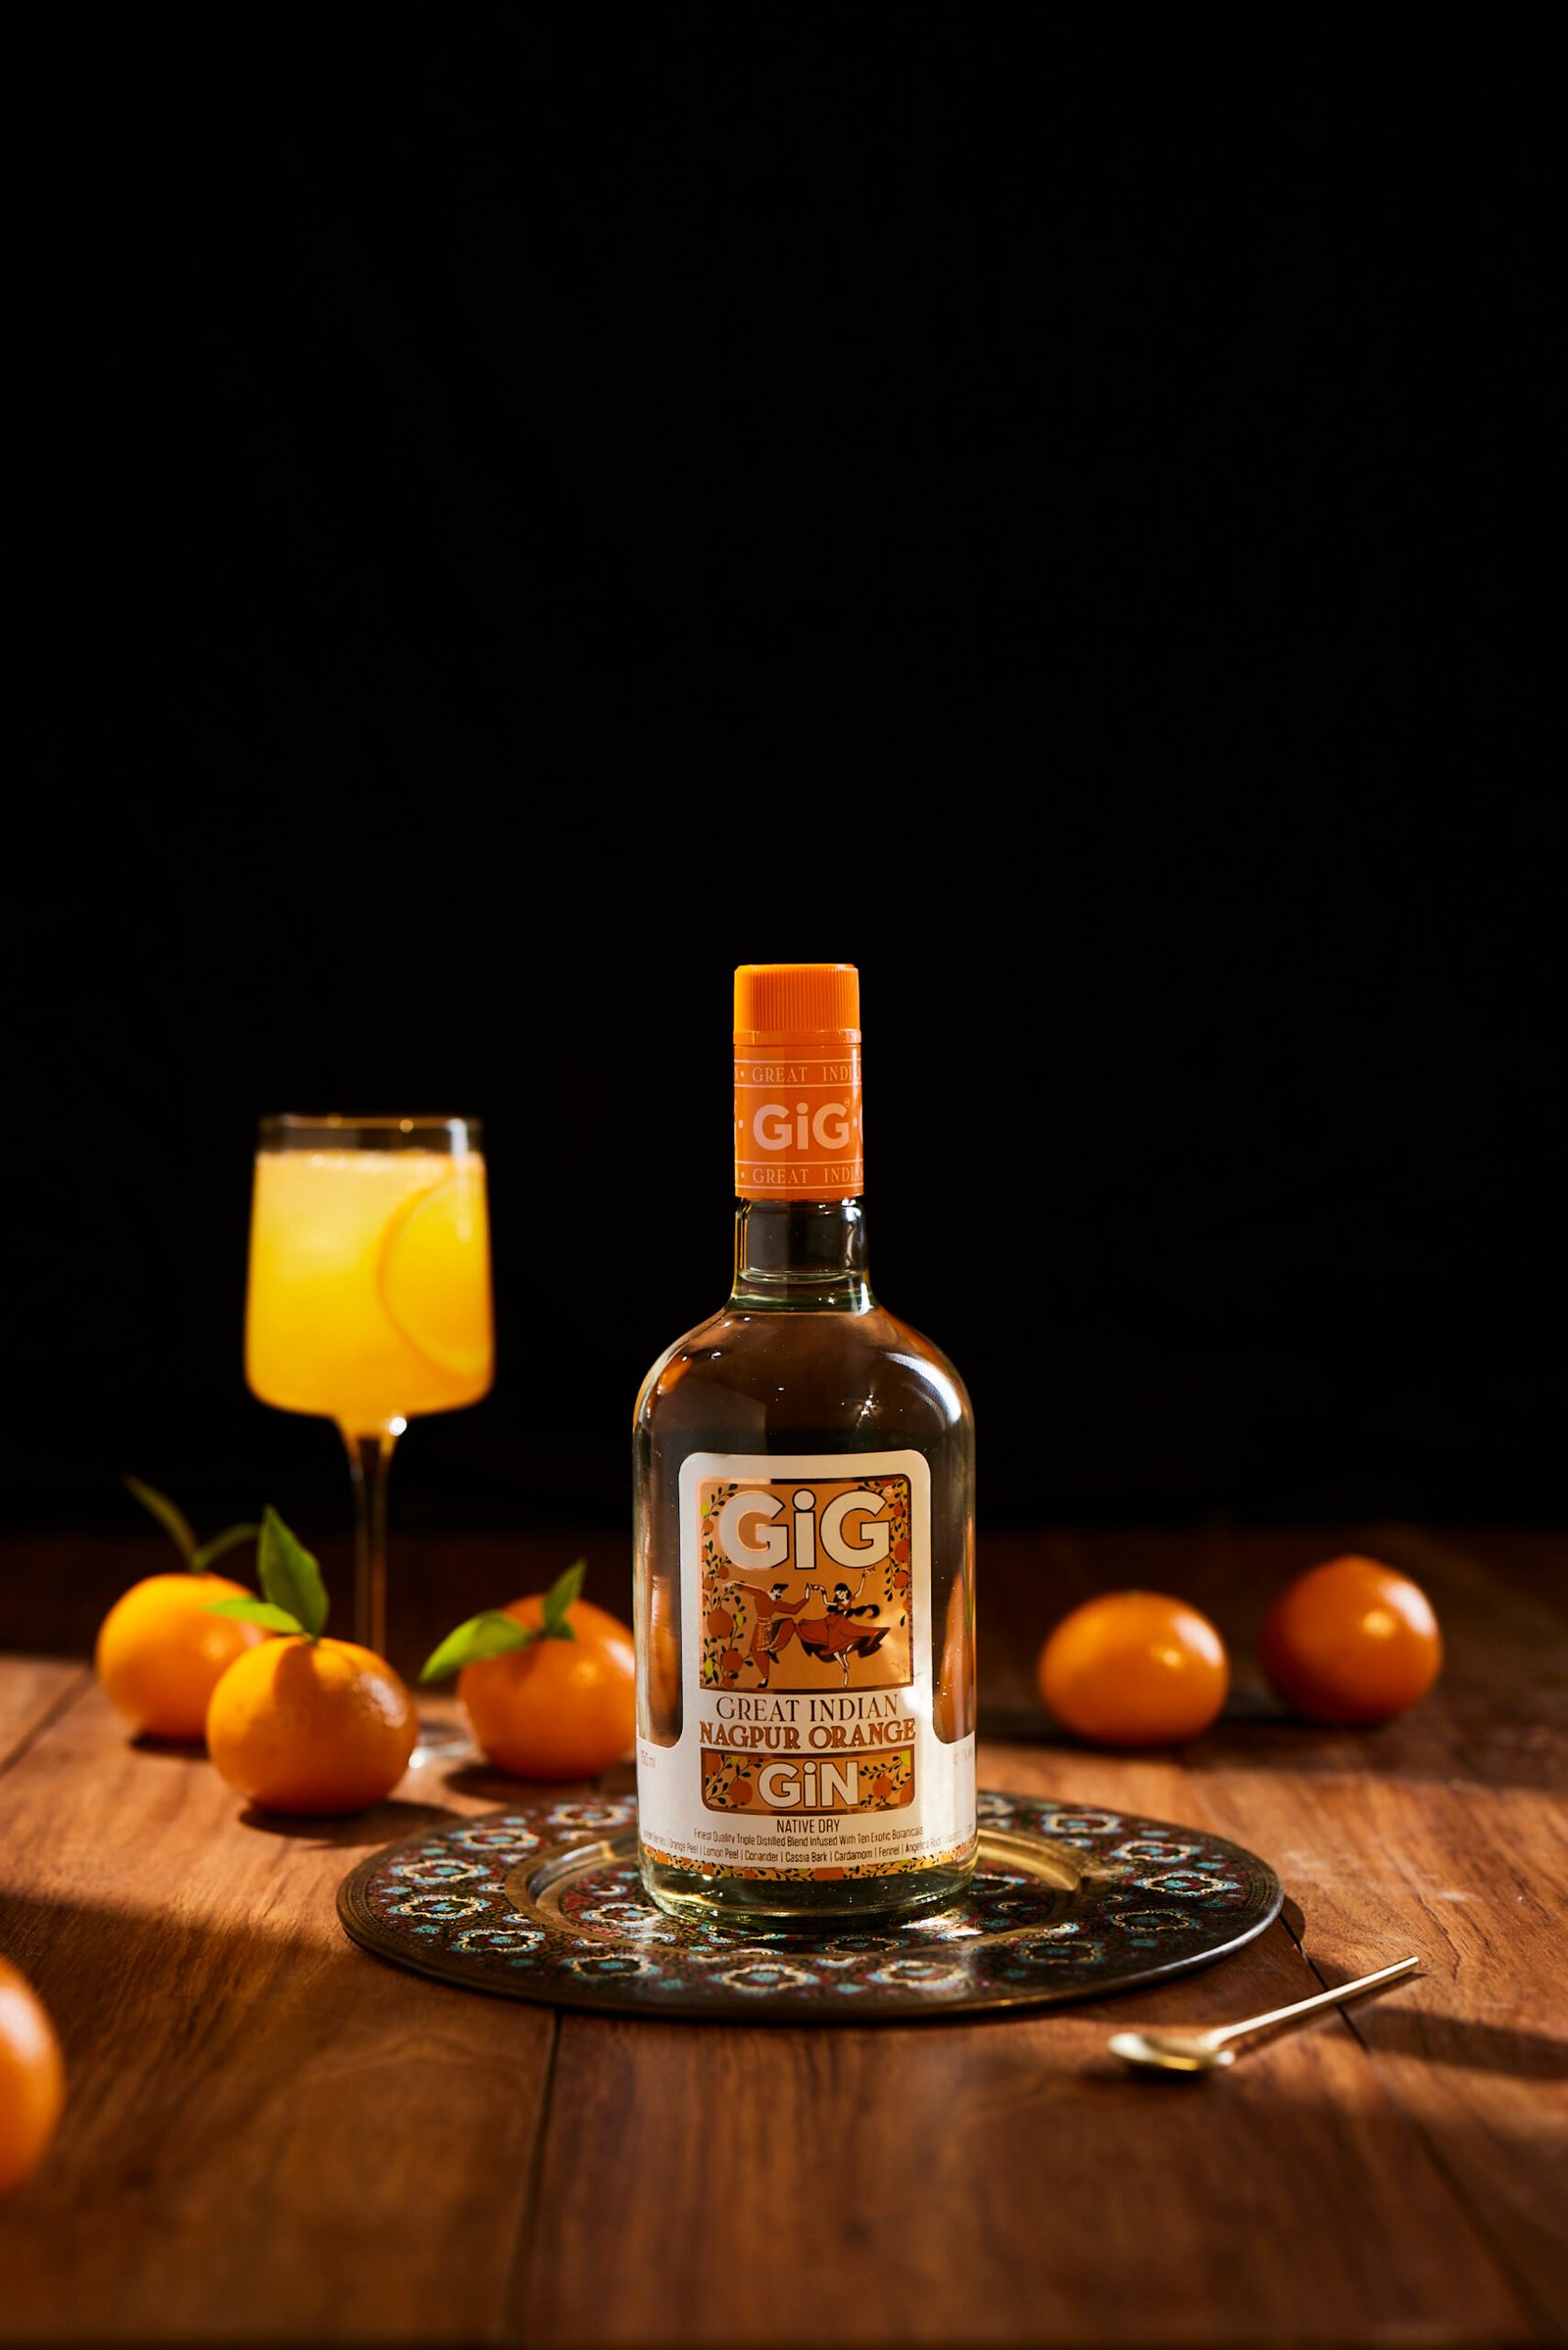 Great Indian Gin Nagpur Orange
